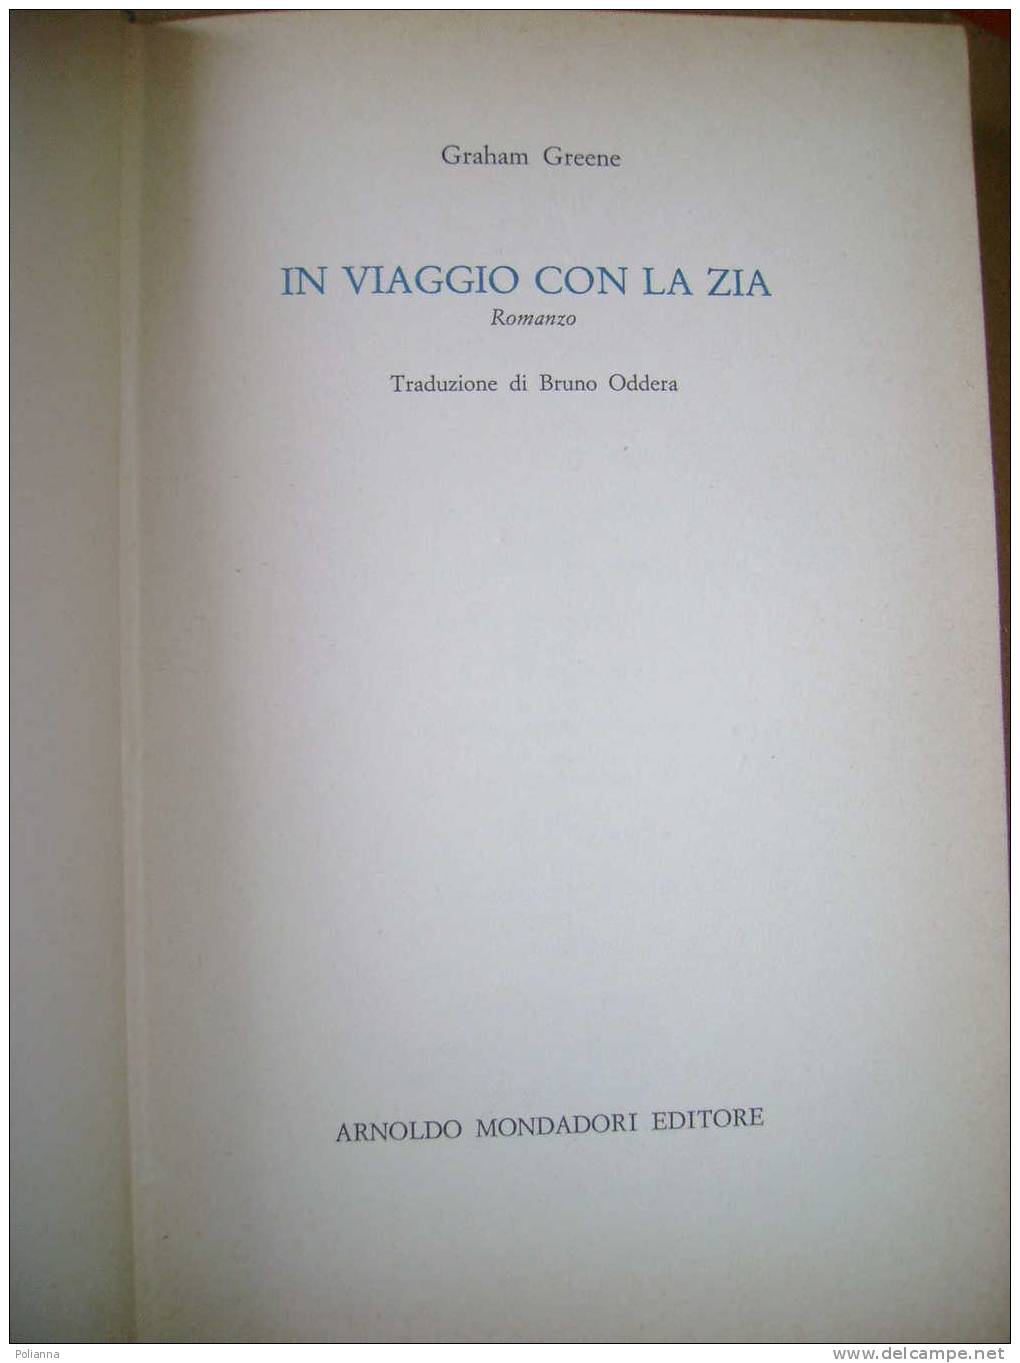 PAB/6 Graham Greene IN VIAGGIO CON LA ZIA Mondadori I Ed.1970 - Action Et Aventure